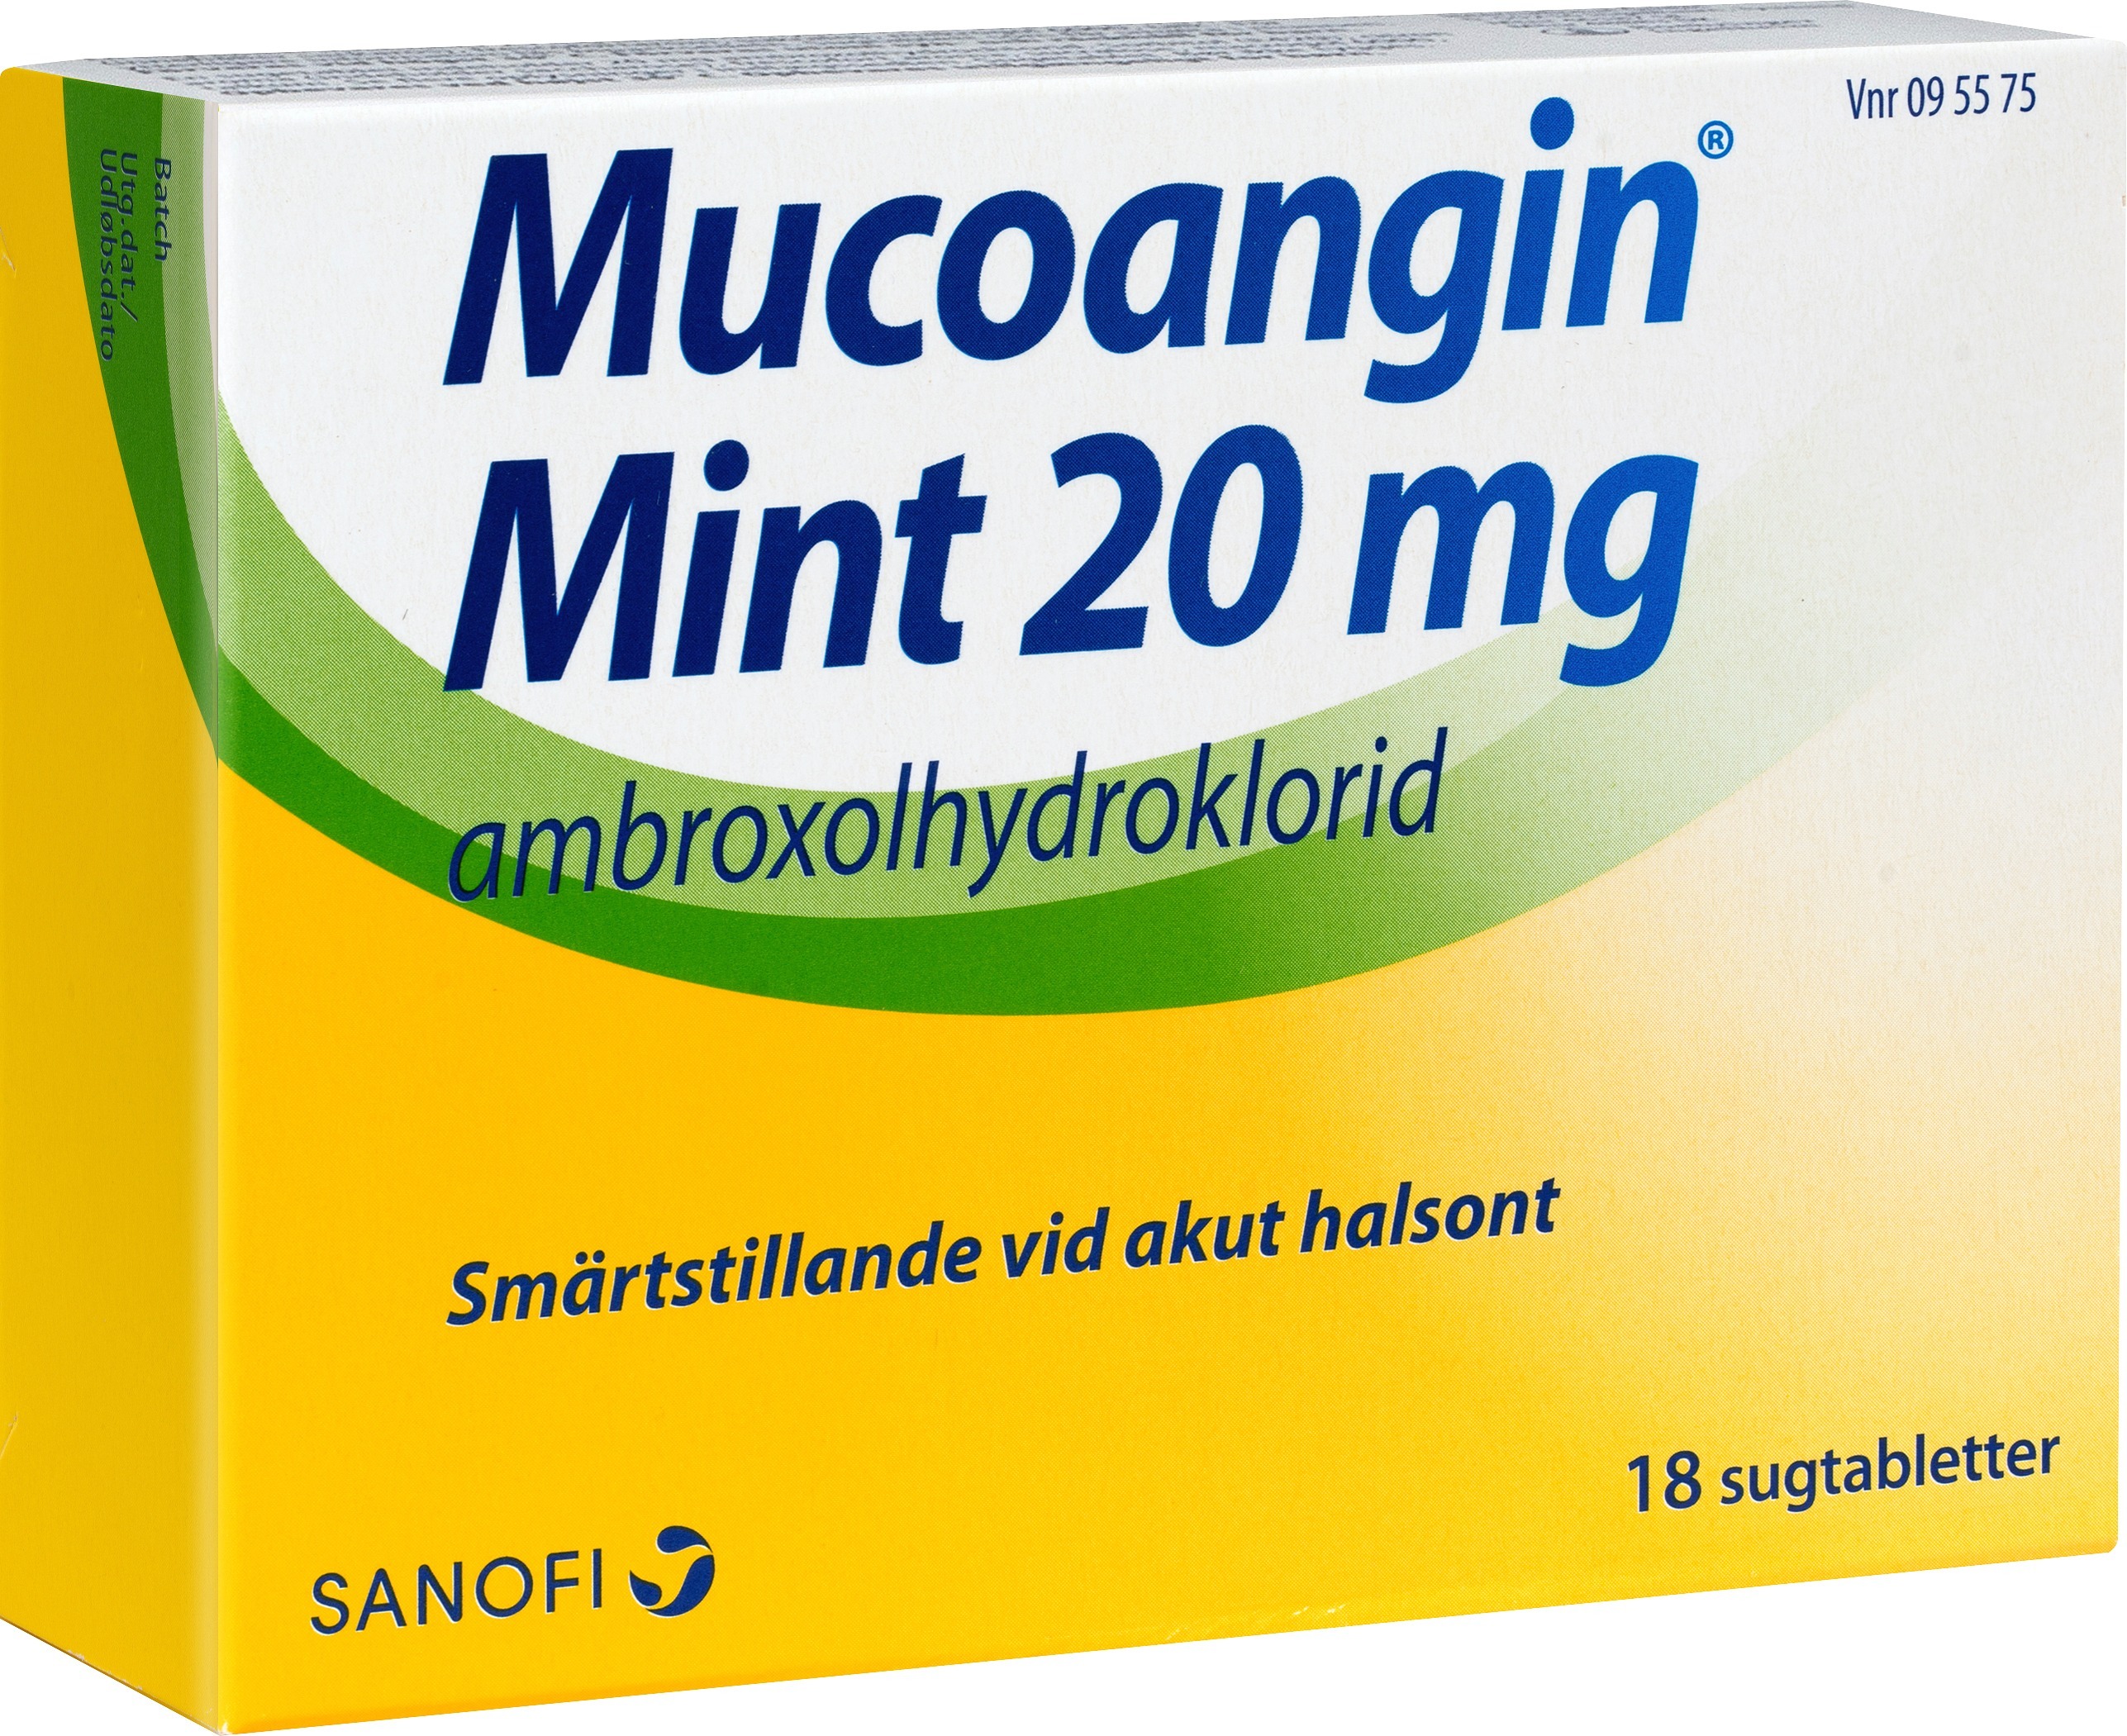 Mucoangin Mint sugtablett 20 mg 18 st